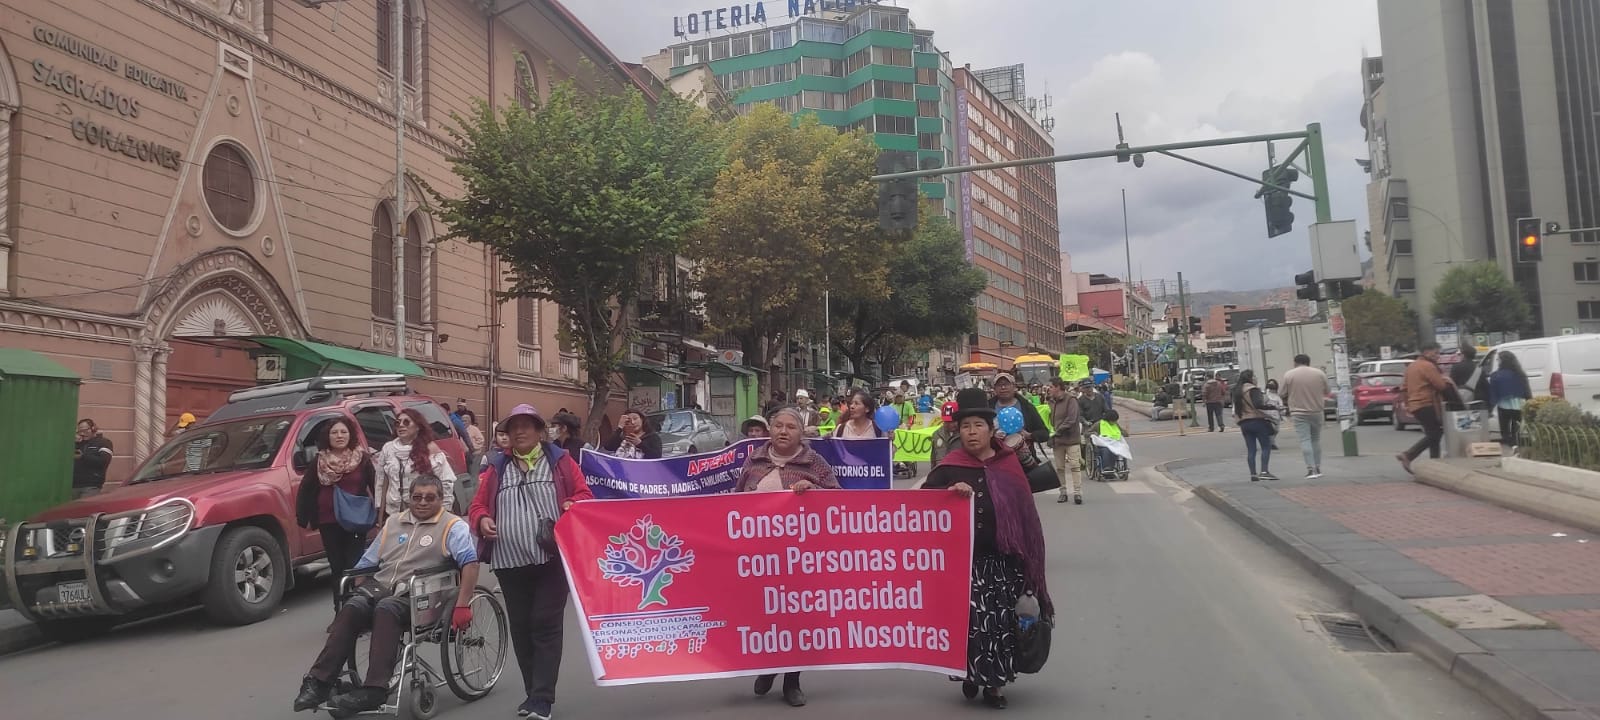 Marcha de personas con discapacidad en La Paz